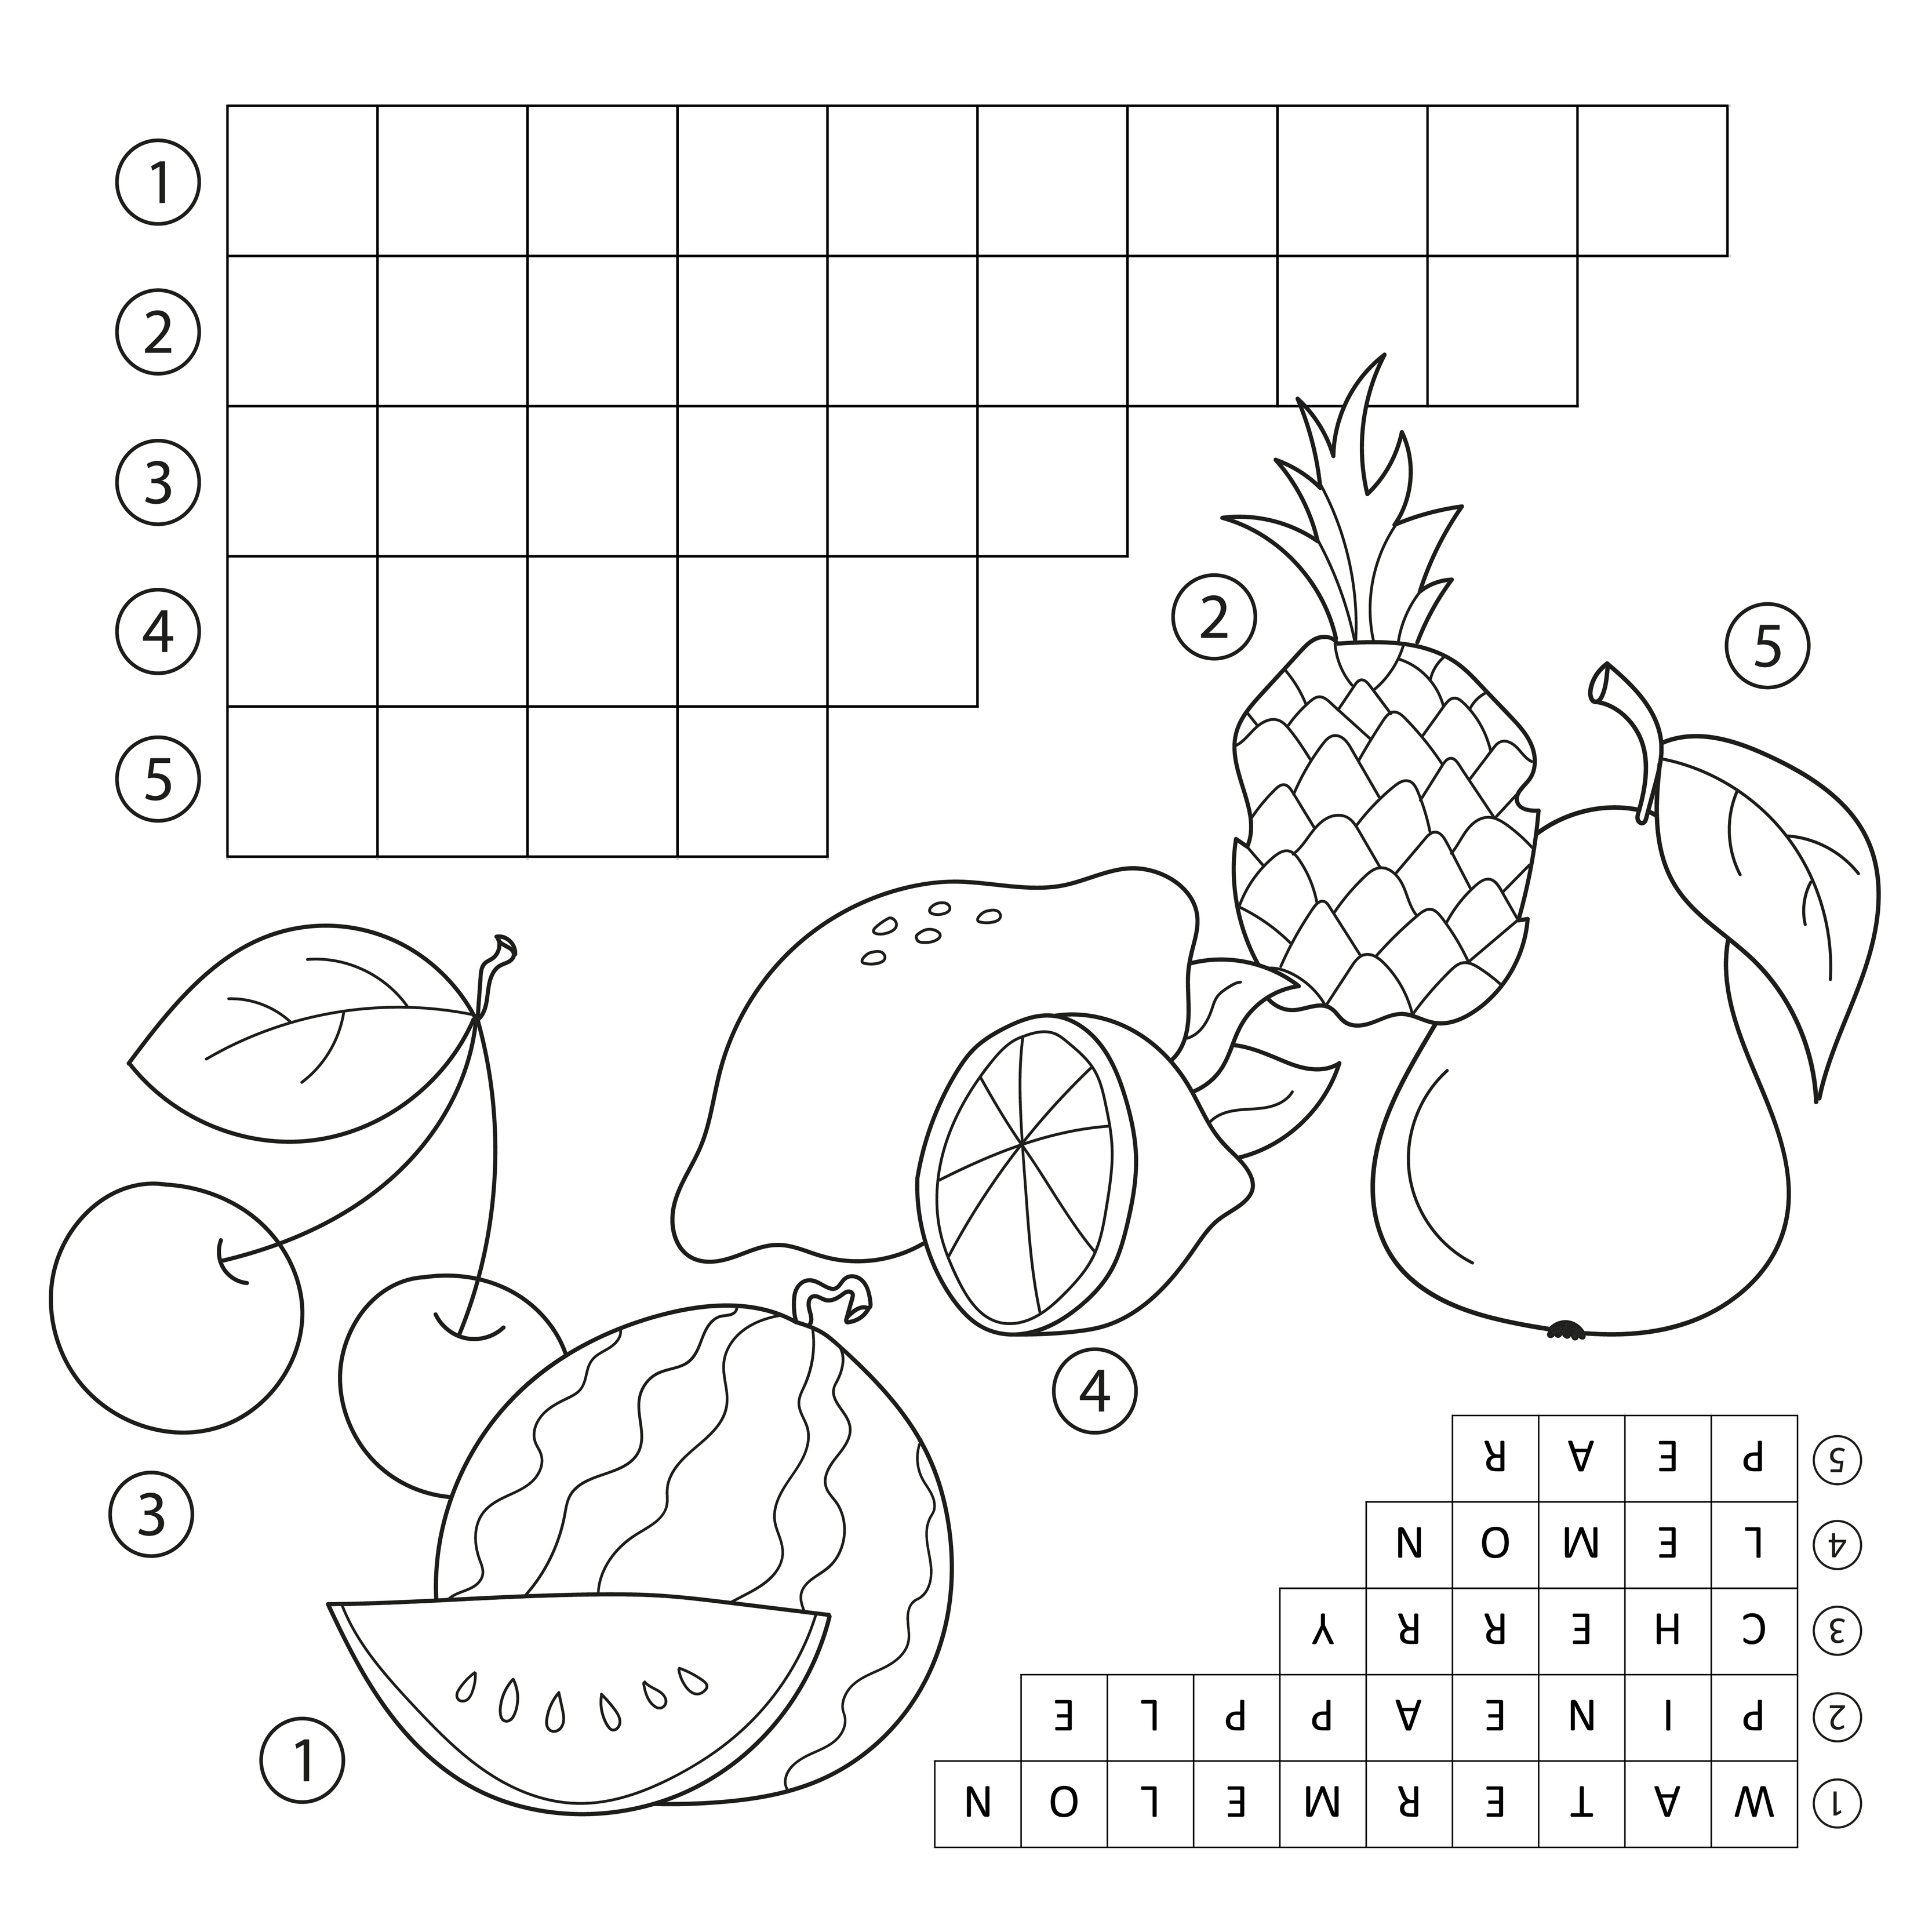 jogo de palavras cruzadas com frutas. página educacional para crianças -  palavras em inglês 4569765 Vetor no Vecteezy